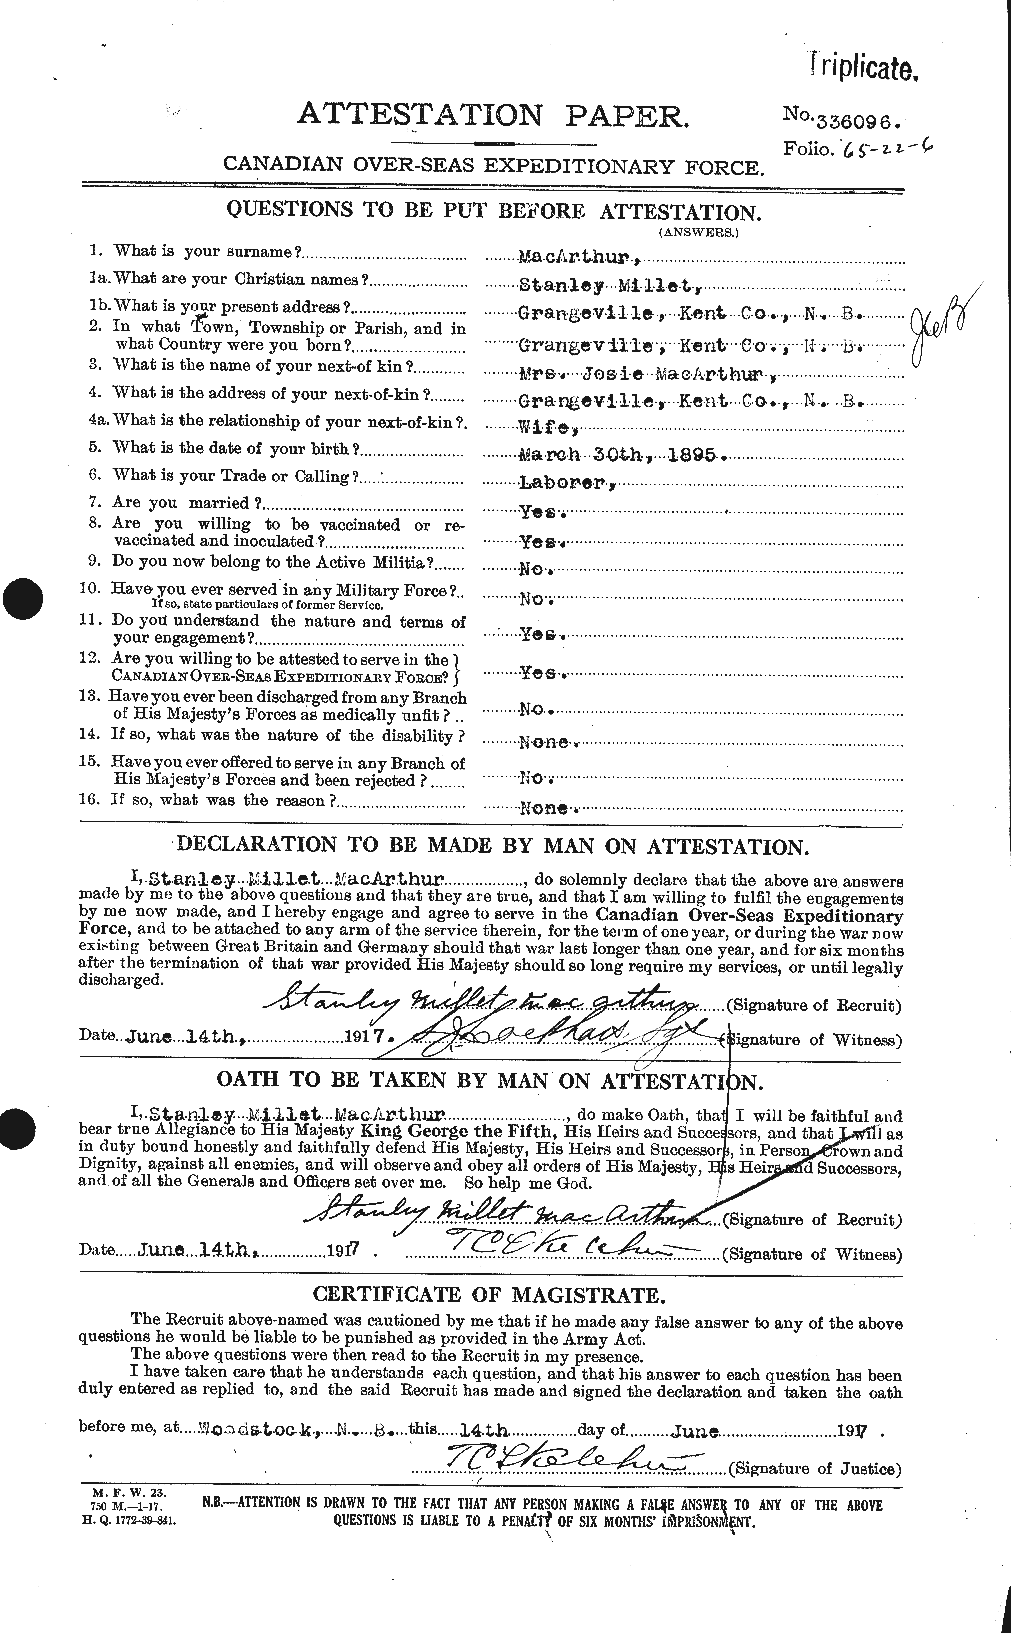 Dossiers du Personnel de la Première Guerre mondiale - CEC 130644a